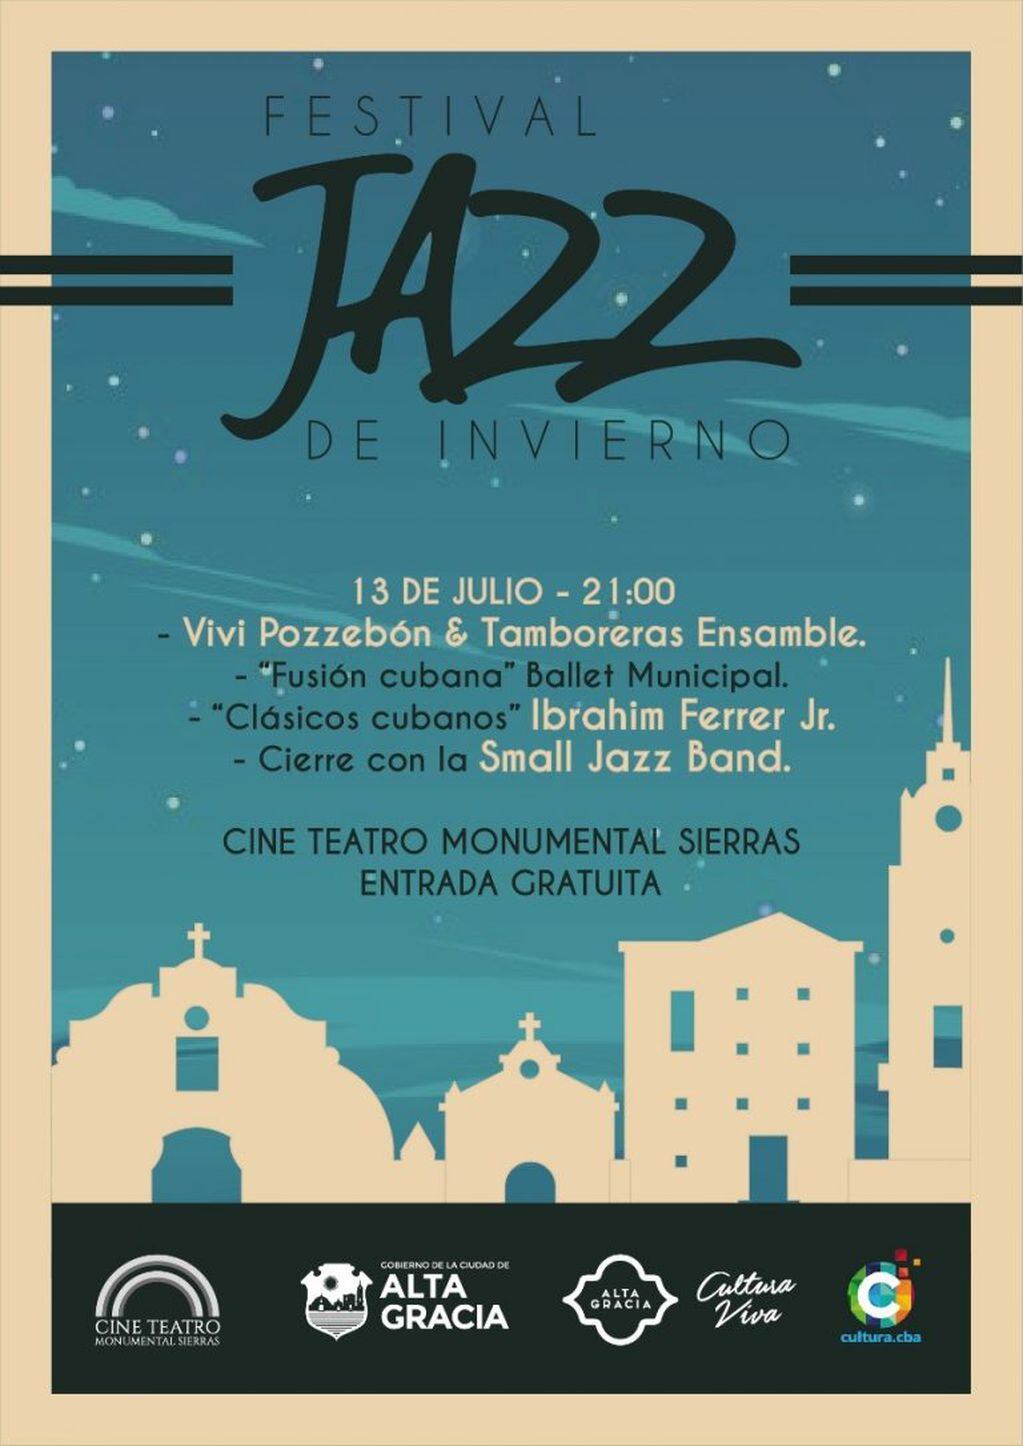 Festival de Jazz en el Cine Teatro Monumental Sierras.